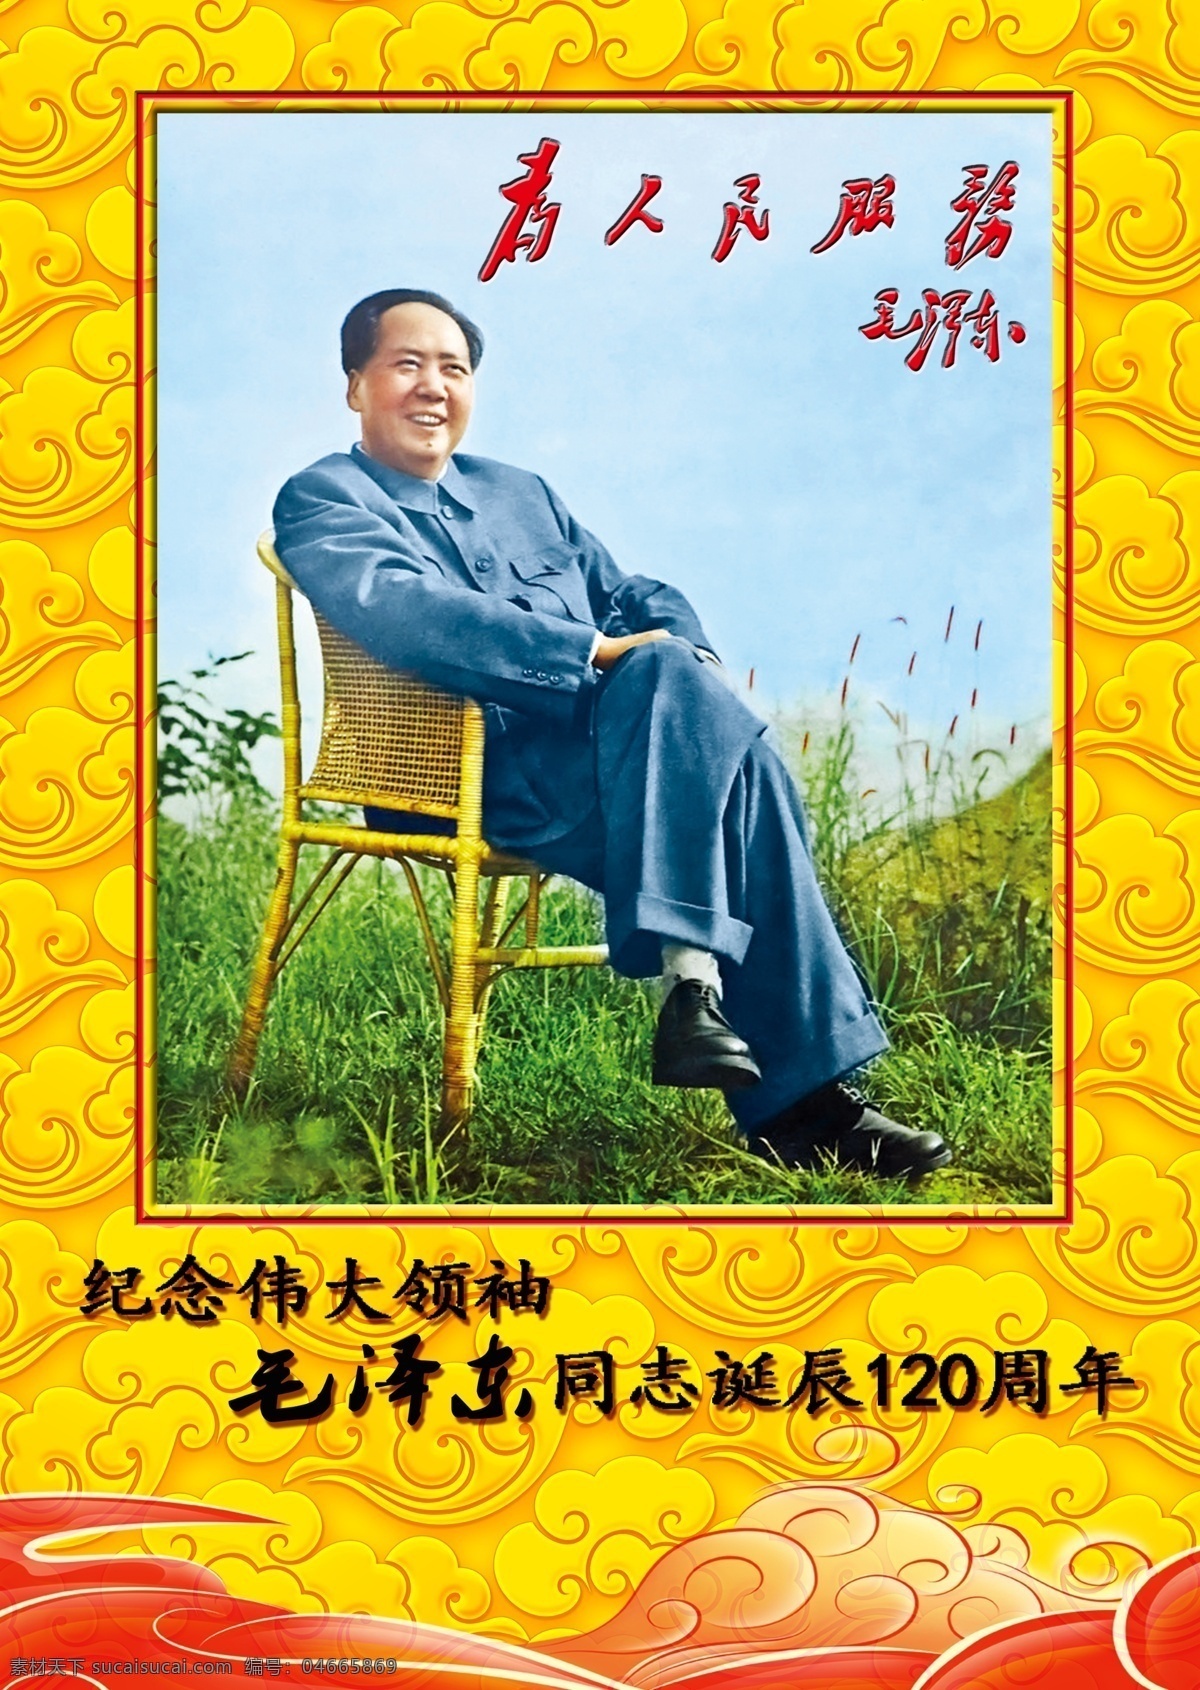 毛 主席 纪念册 封面 毛主席纪念册 为人民服务 毛主席 伟大领袖 文化艺术 绘画书法